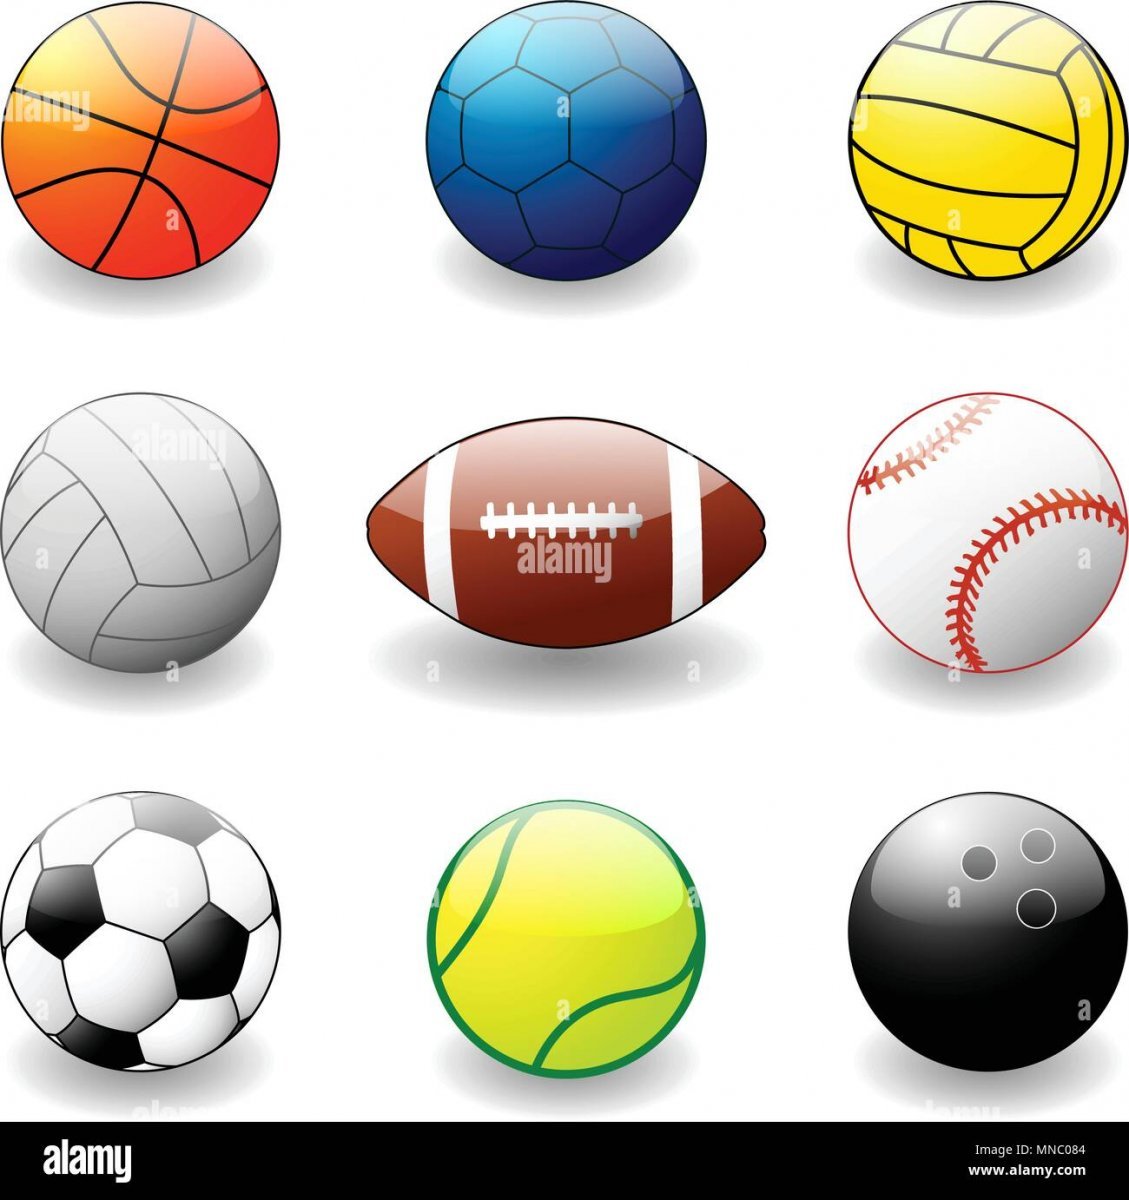 Рисунки спортивных мячей разного вида